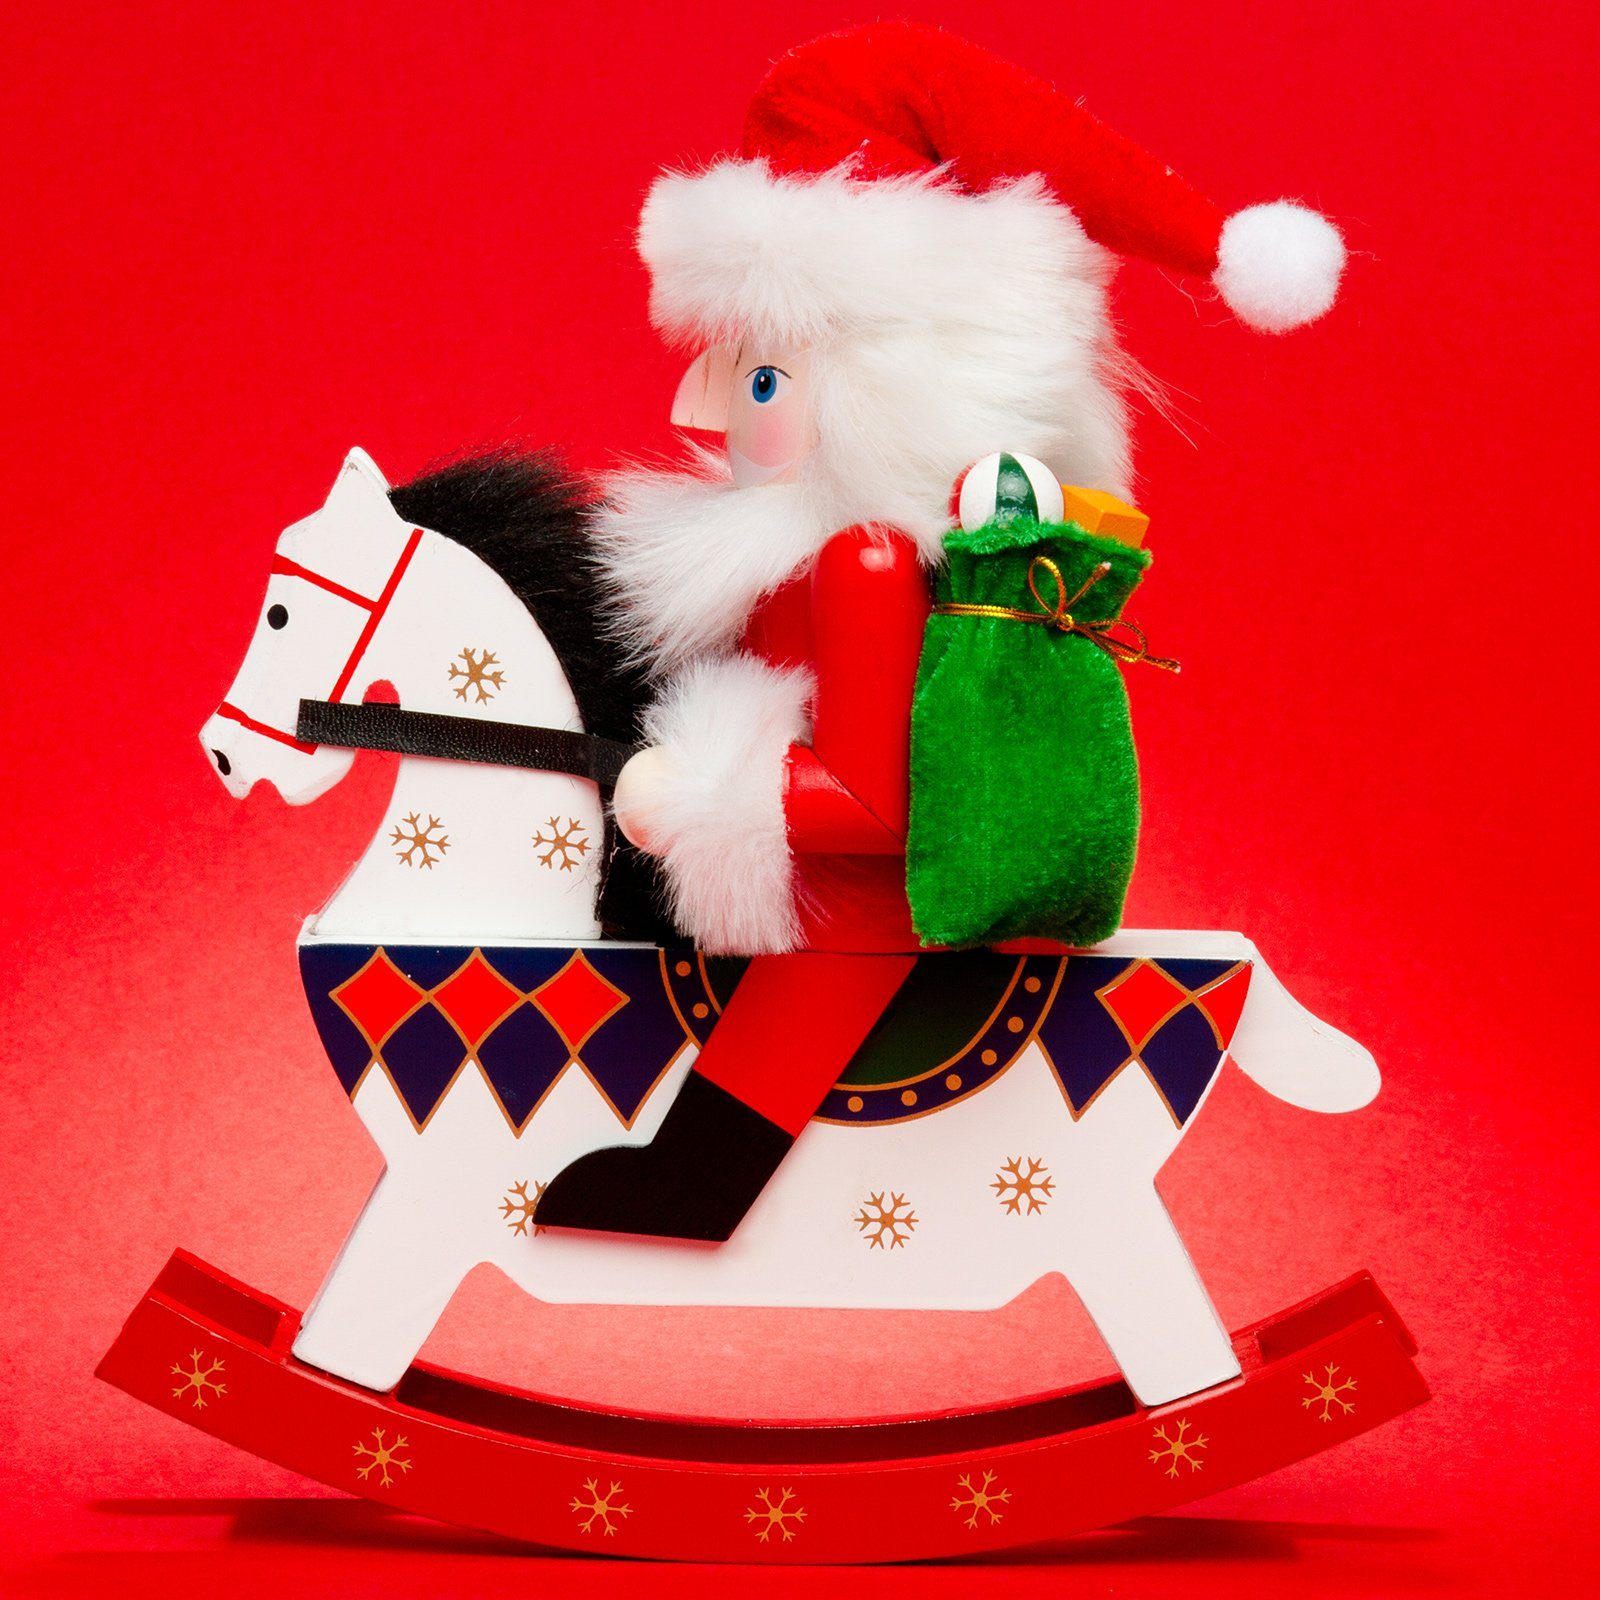 SIKORA Weihnachtsfigur XL große Nussknacker E aus E03 - rot Reiterlein Serie WEIHNACHTSMANN Holz